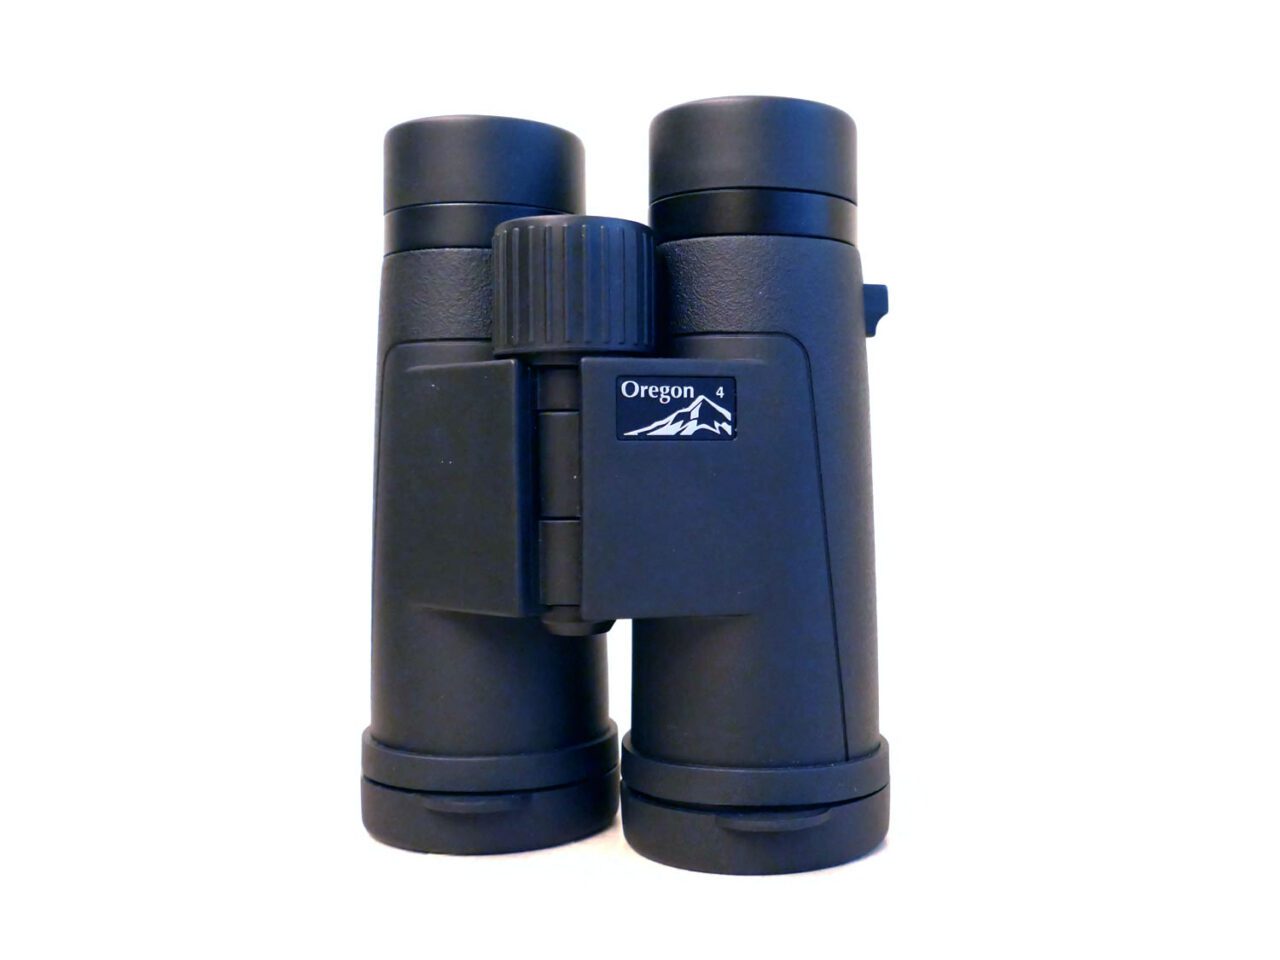 Opticron Oregon 4 PC Oasis binoculars.